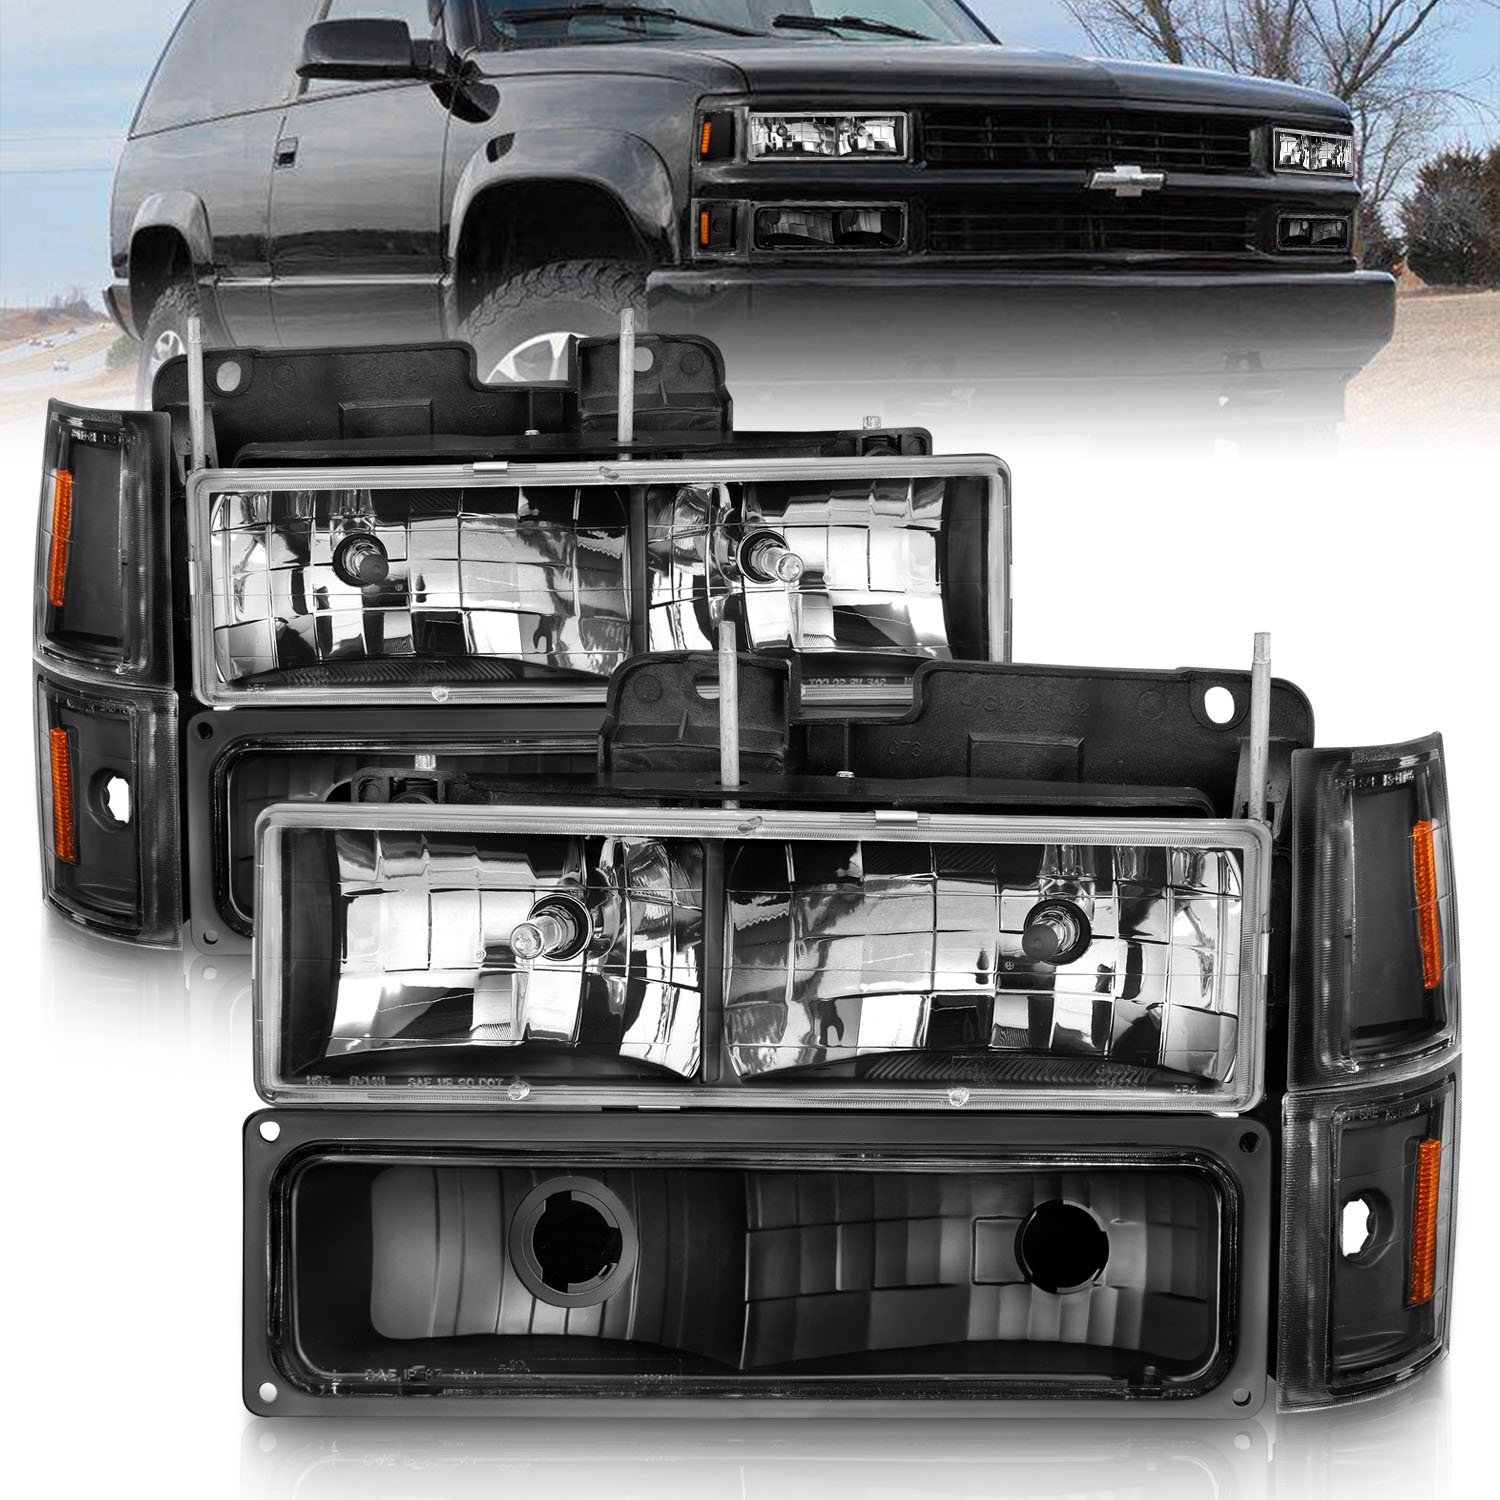 111505 Crystal HL Halogen Headlights Fits Select 1988-2000 GM C/K Truck, SUV Models [Black Housing, Clear Lens]